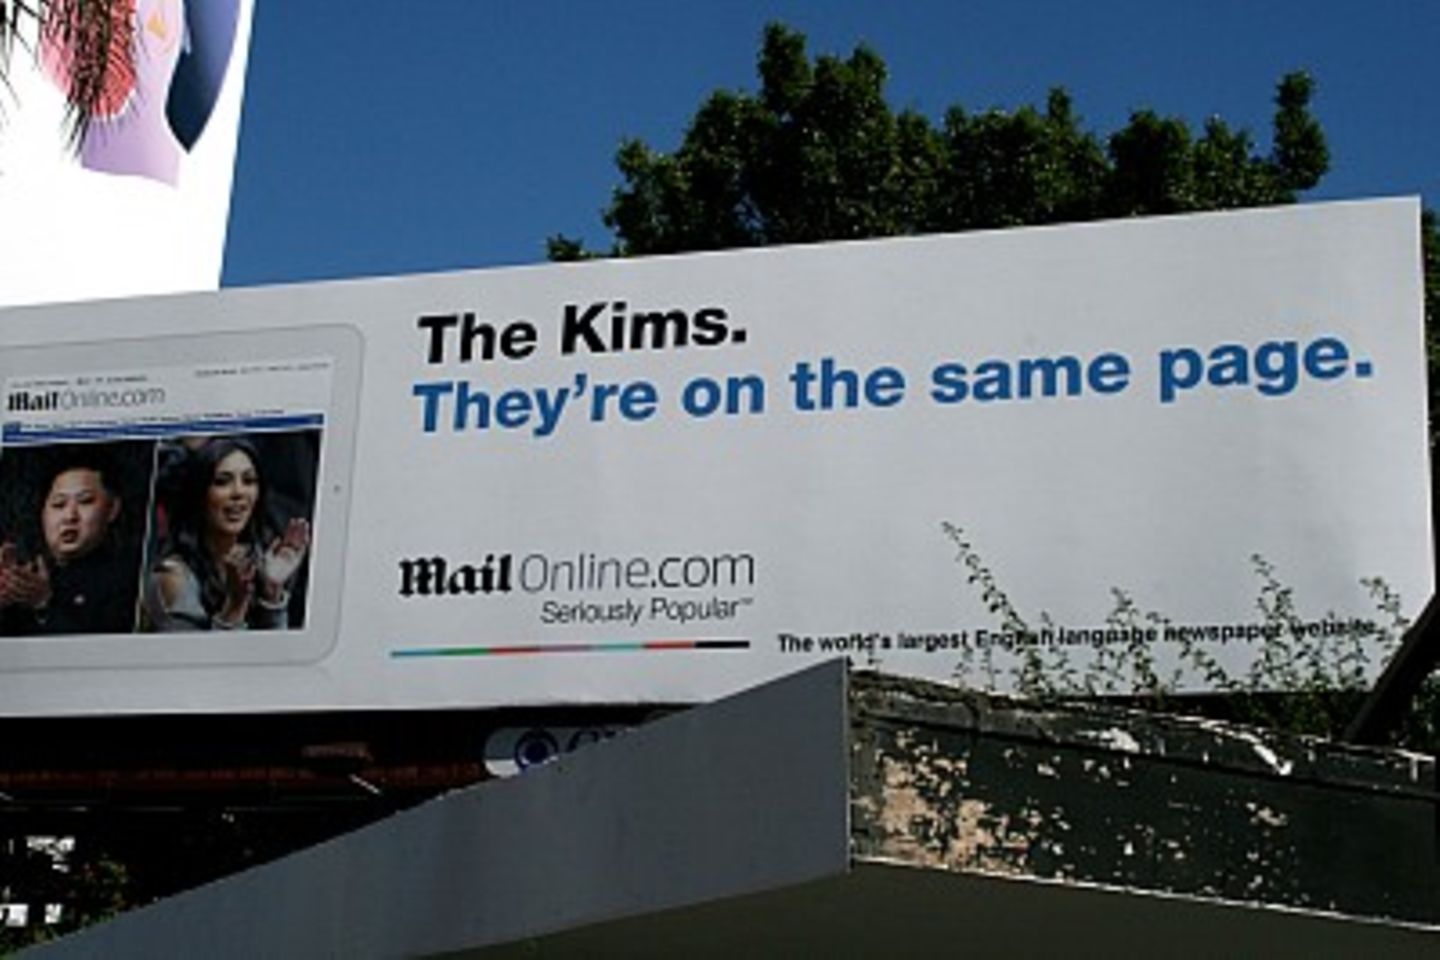 Werbeplakat vergleicht Kim Kardashian mit Kim Jong-Un